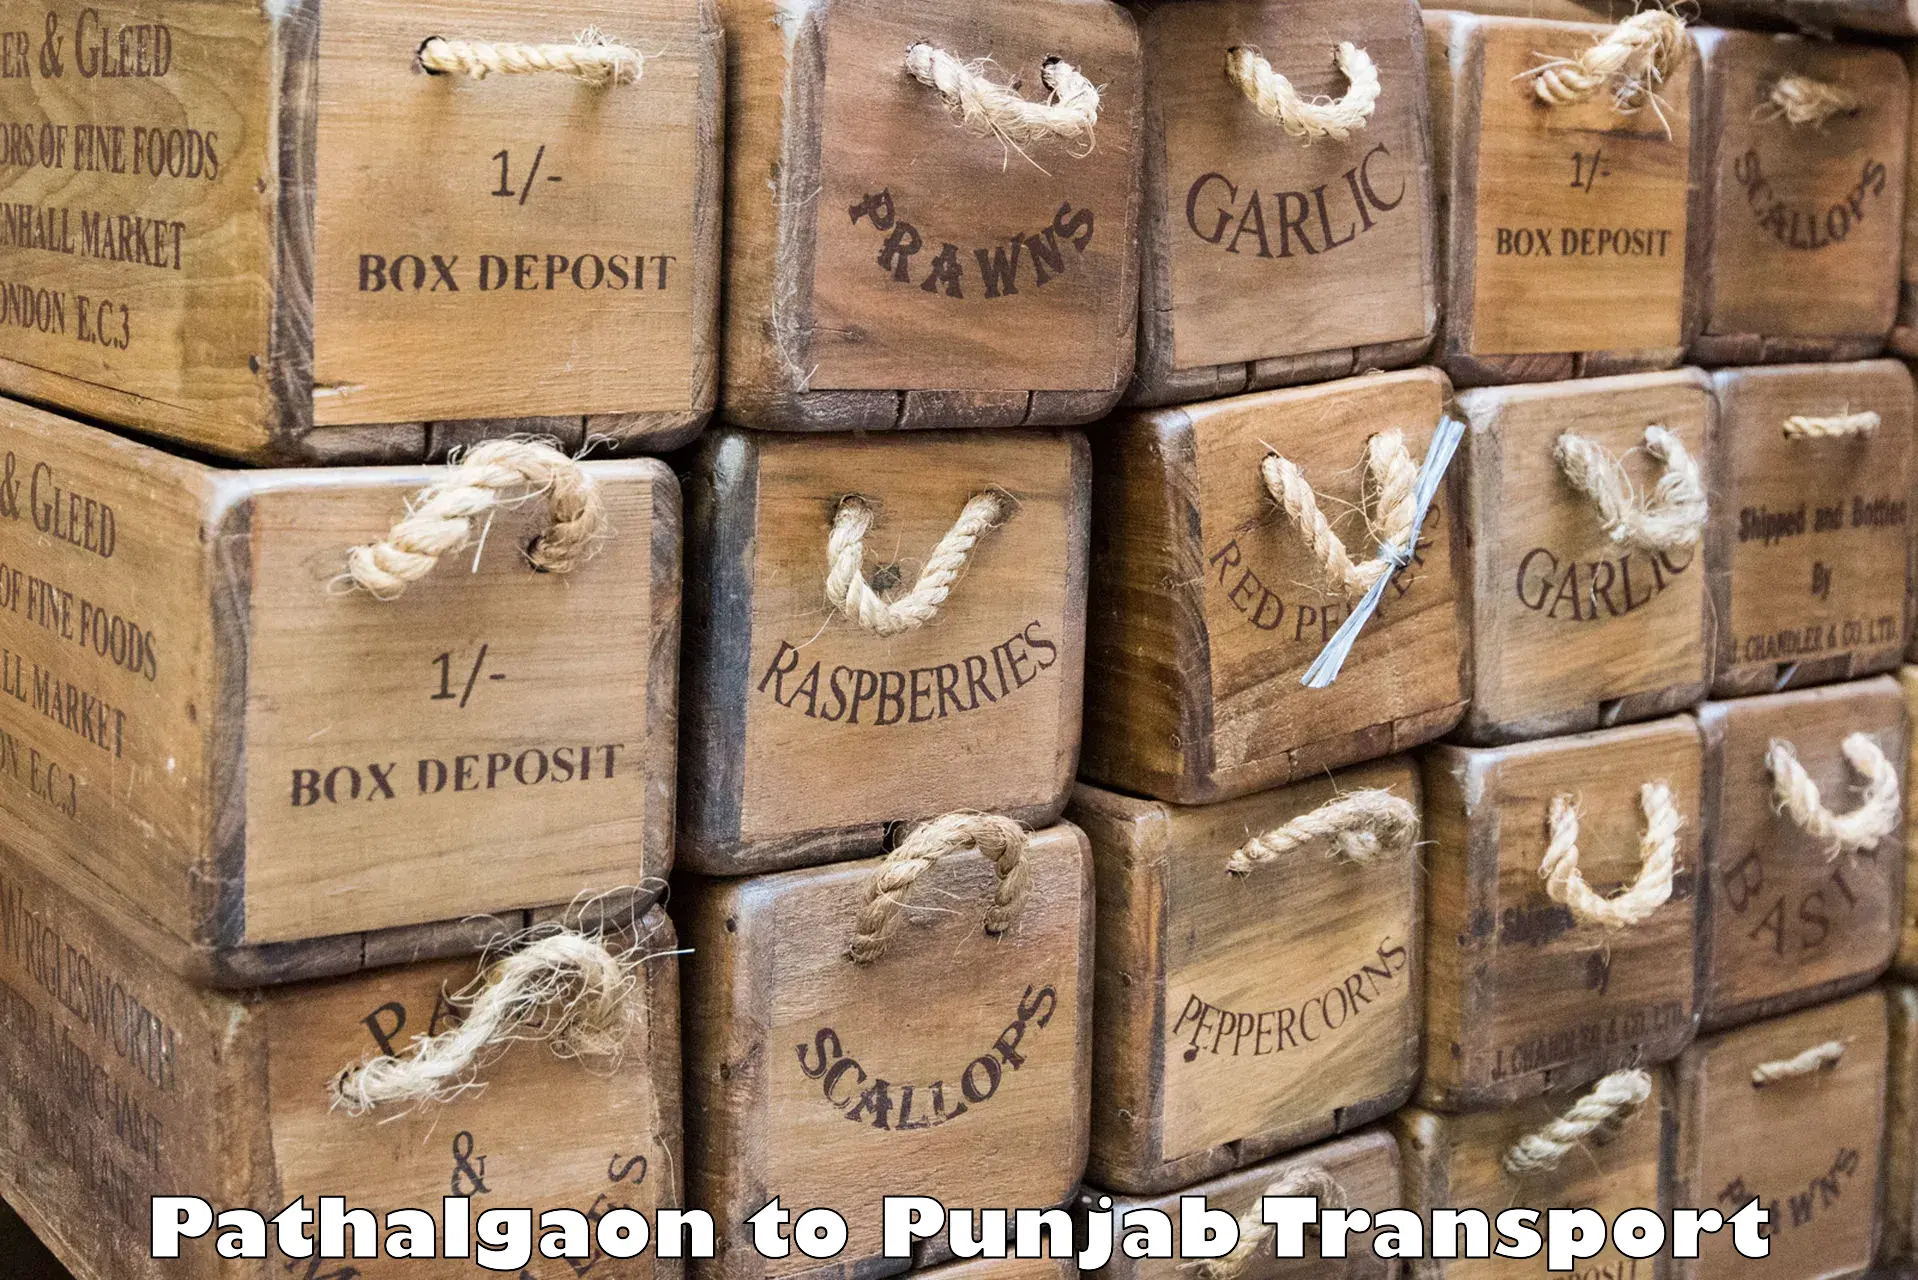 Furniture transport service Pathalgaon to Punjab